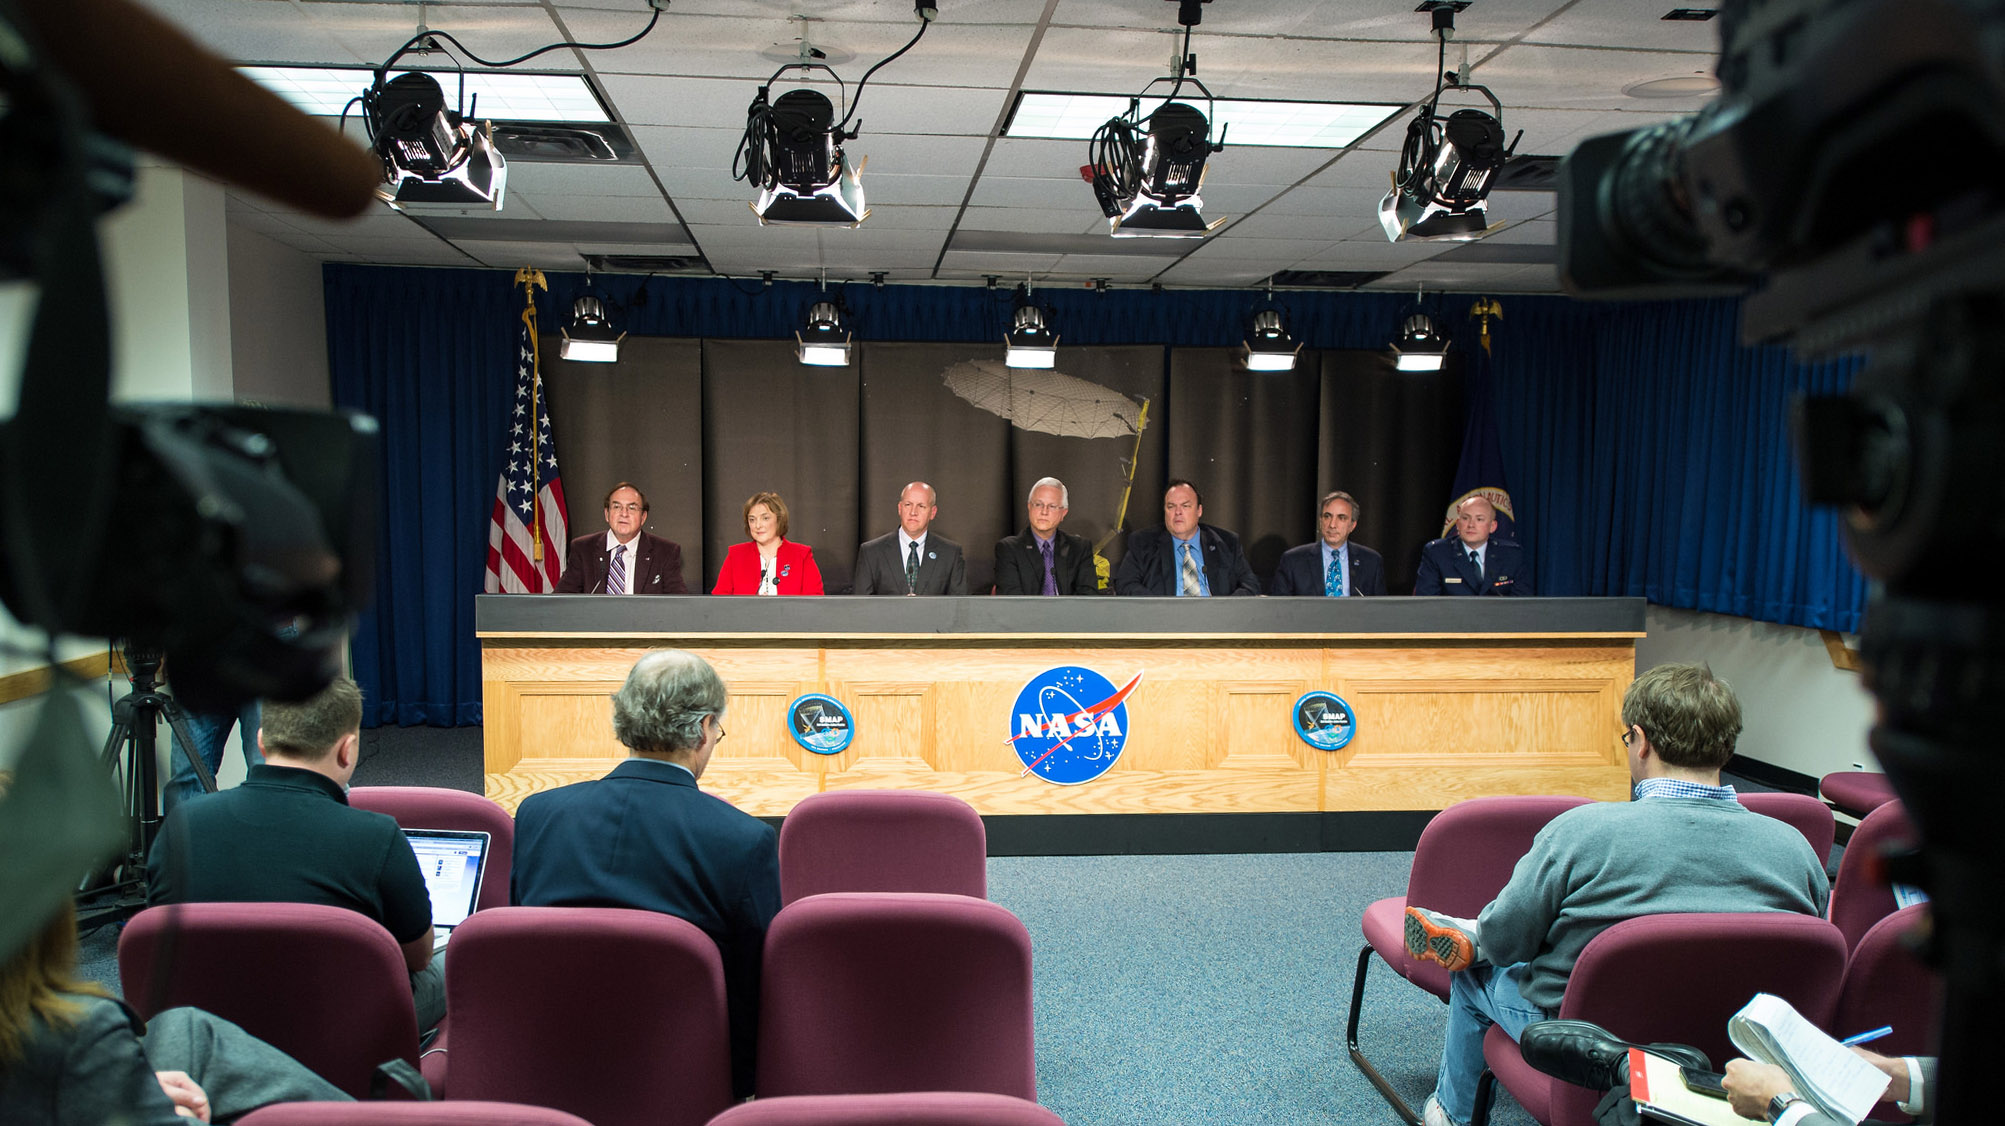 NASA News Conference